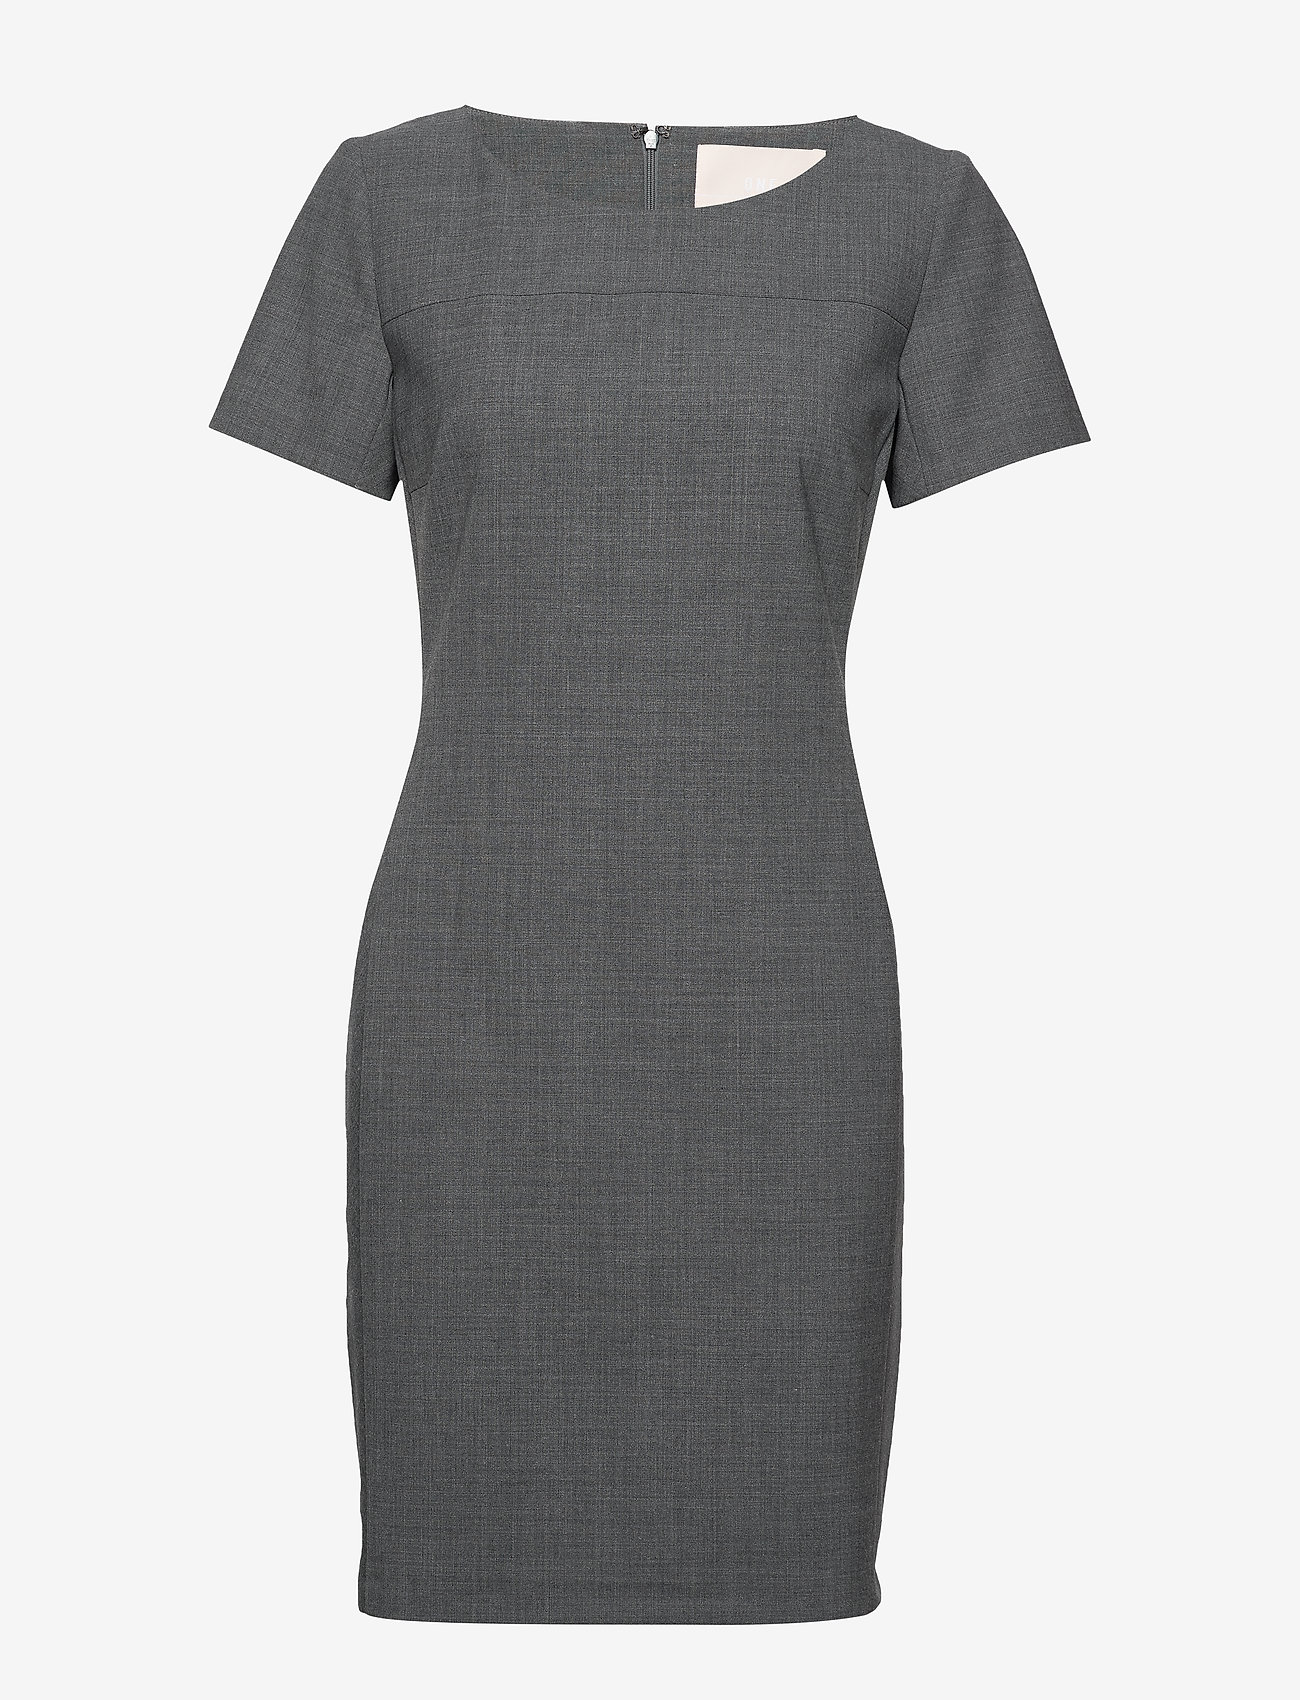 Karen By Simonsen - SydneyKB SS Dress - stramme kjoler - grey melange - 0